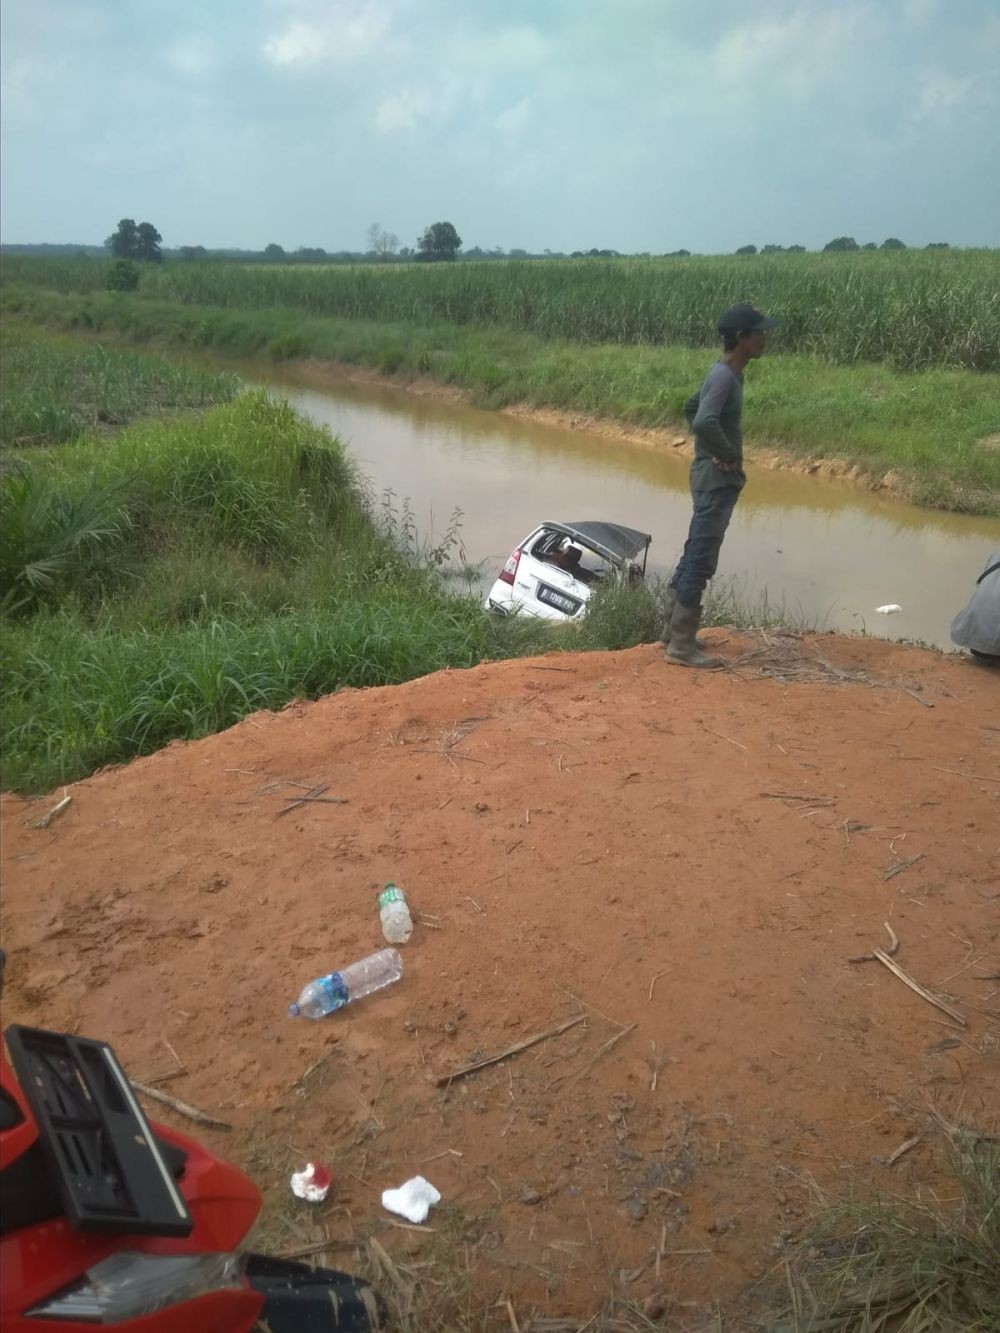 Toyota Innova Masuk ke Sungai di Tuba, 2 Meninggal dan 1 Luka Berat